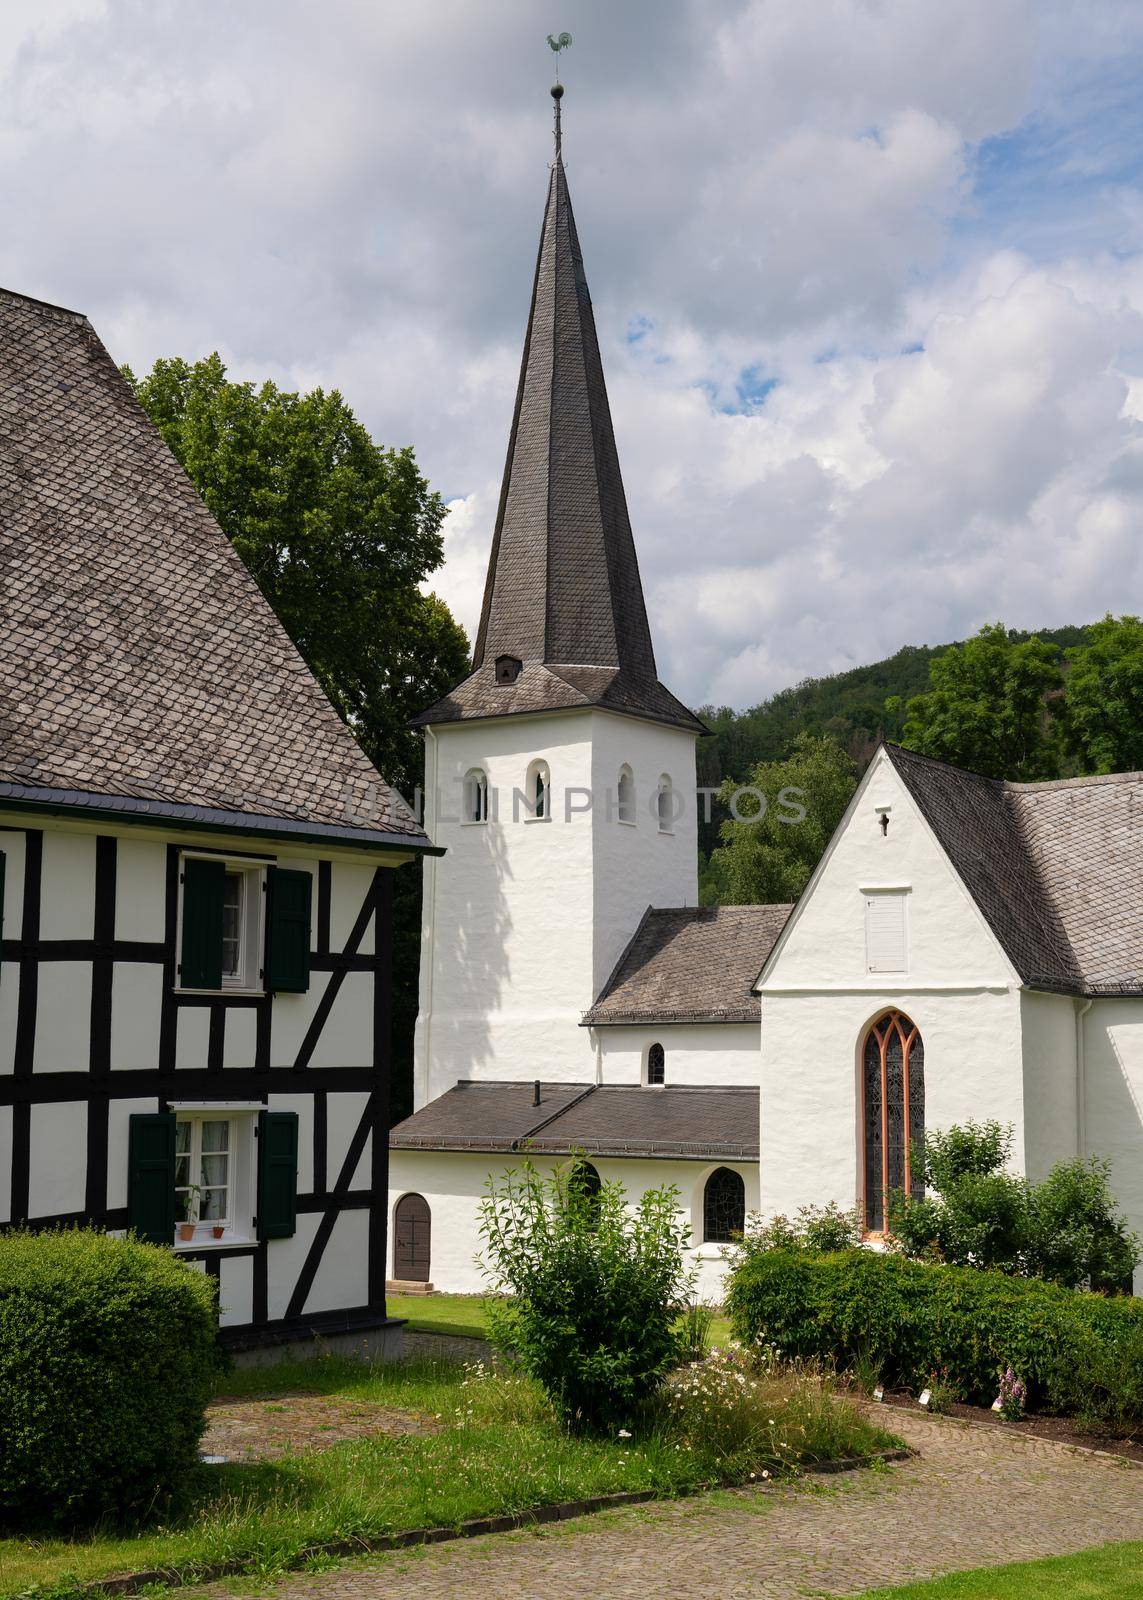 Medieval church of Wiedenest, Bergneustadt, Bergisches Land, Germany